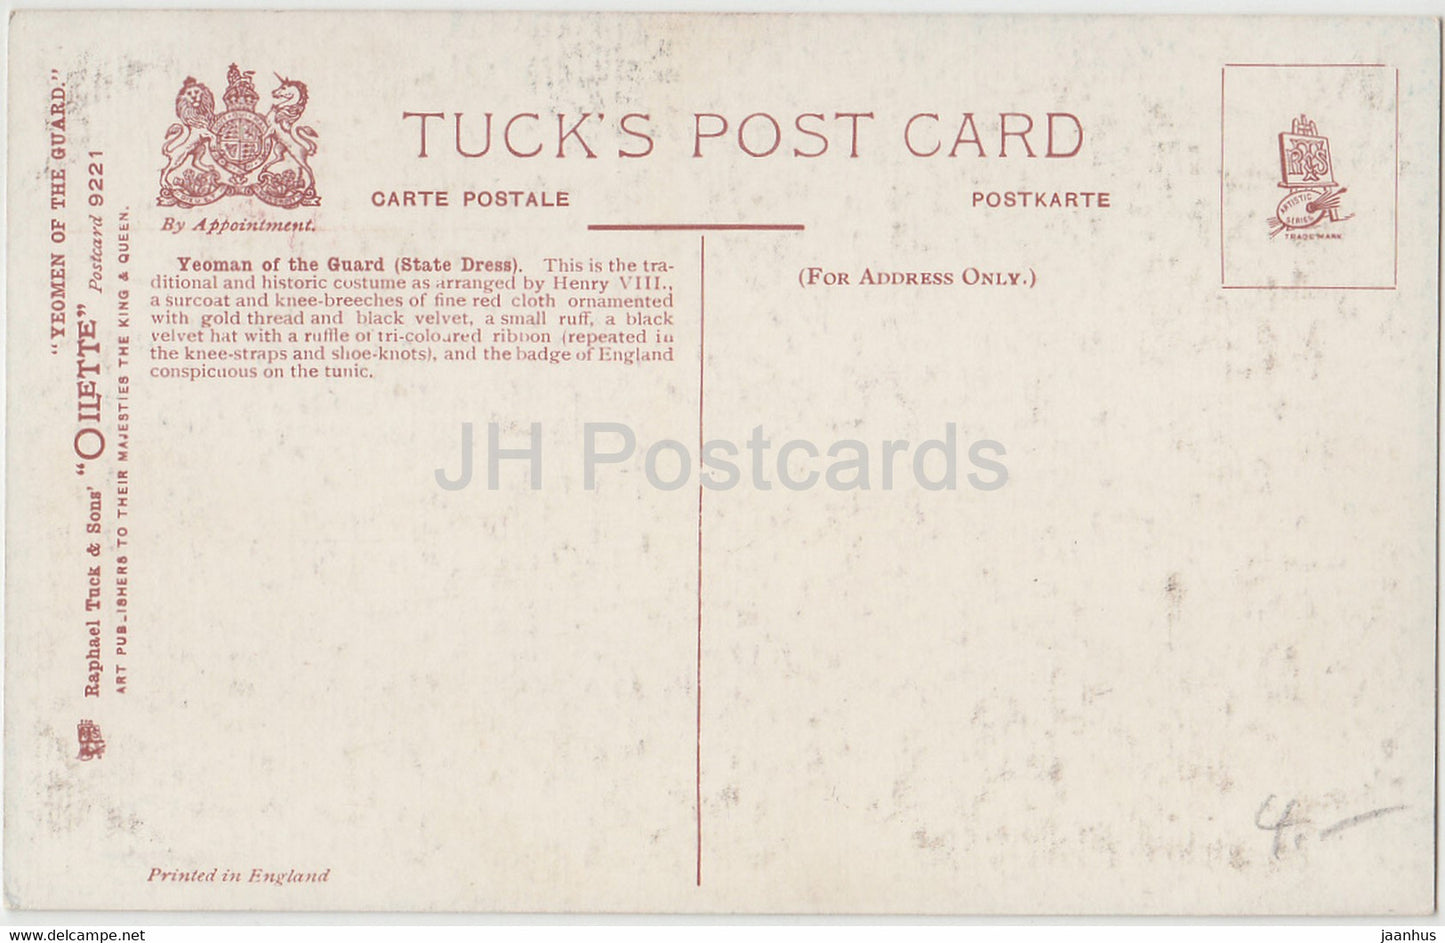 Ein Yeoman der Garde – Staatskleidung – alte Postkarte – England – Vereinigtes Königreich – unbenutzt